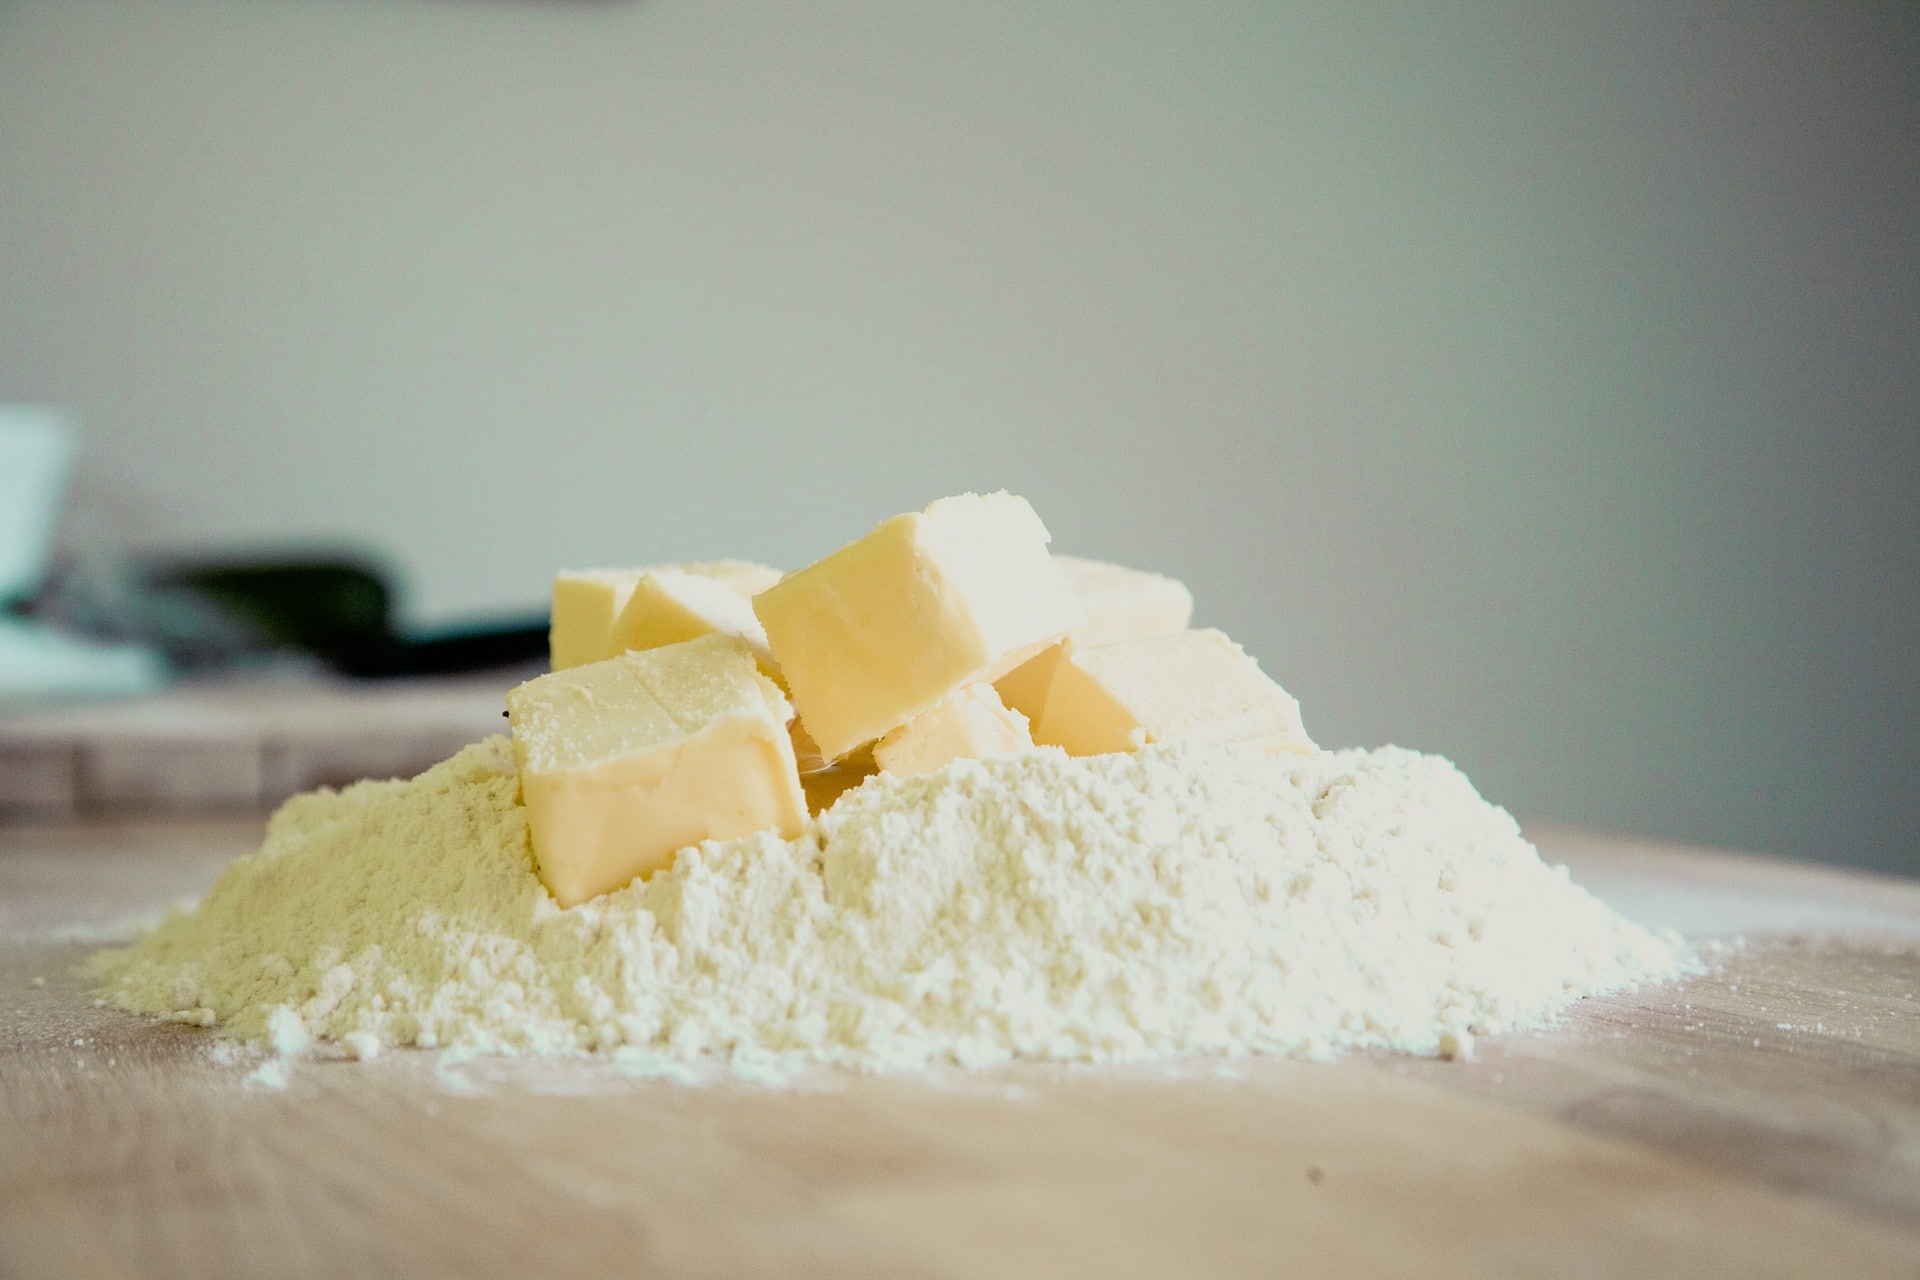 79 Proben von Butter, Mischstreichfetten, Margarine und Kochcremen wurden gezogen